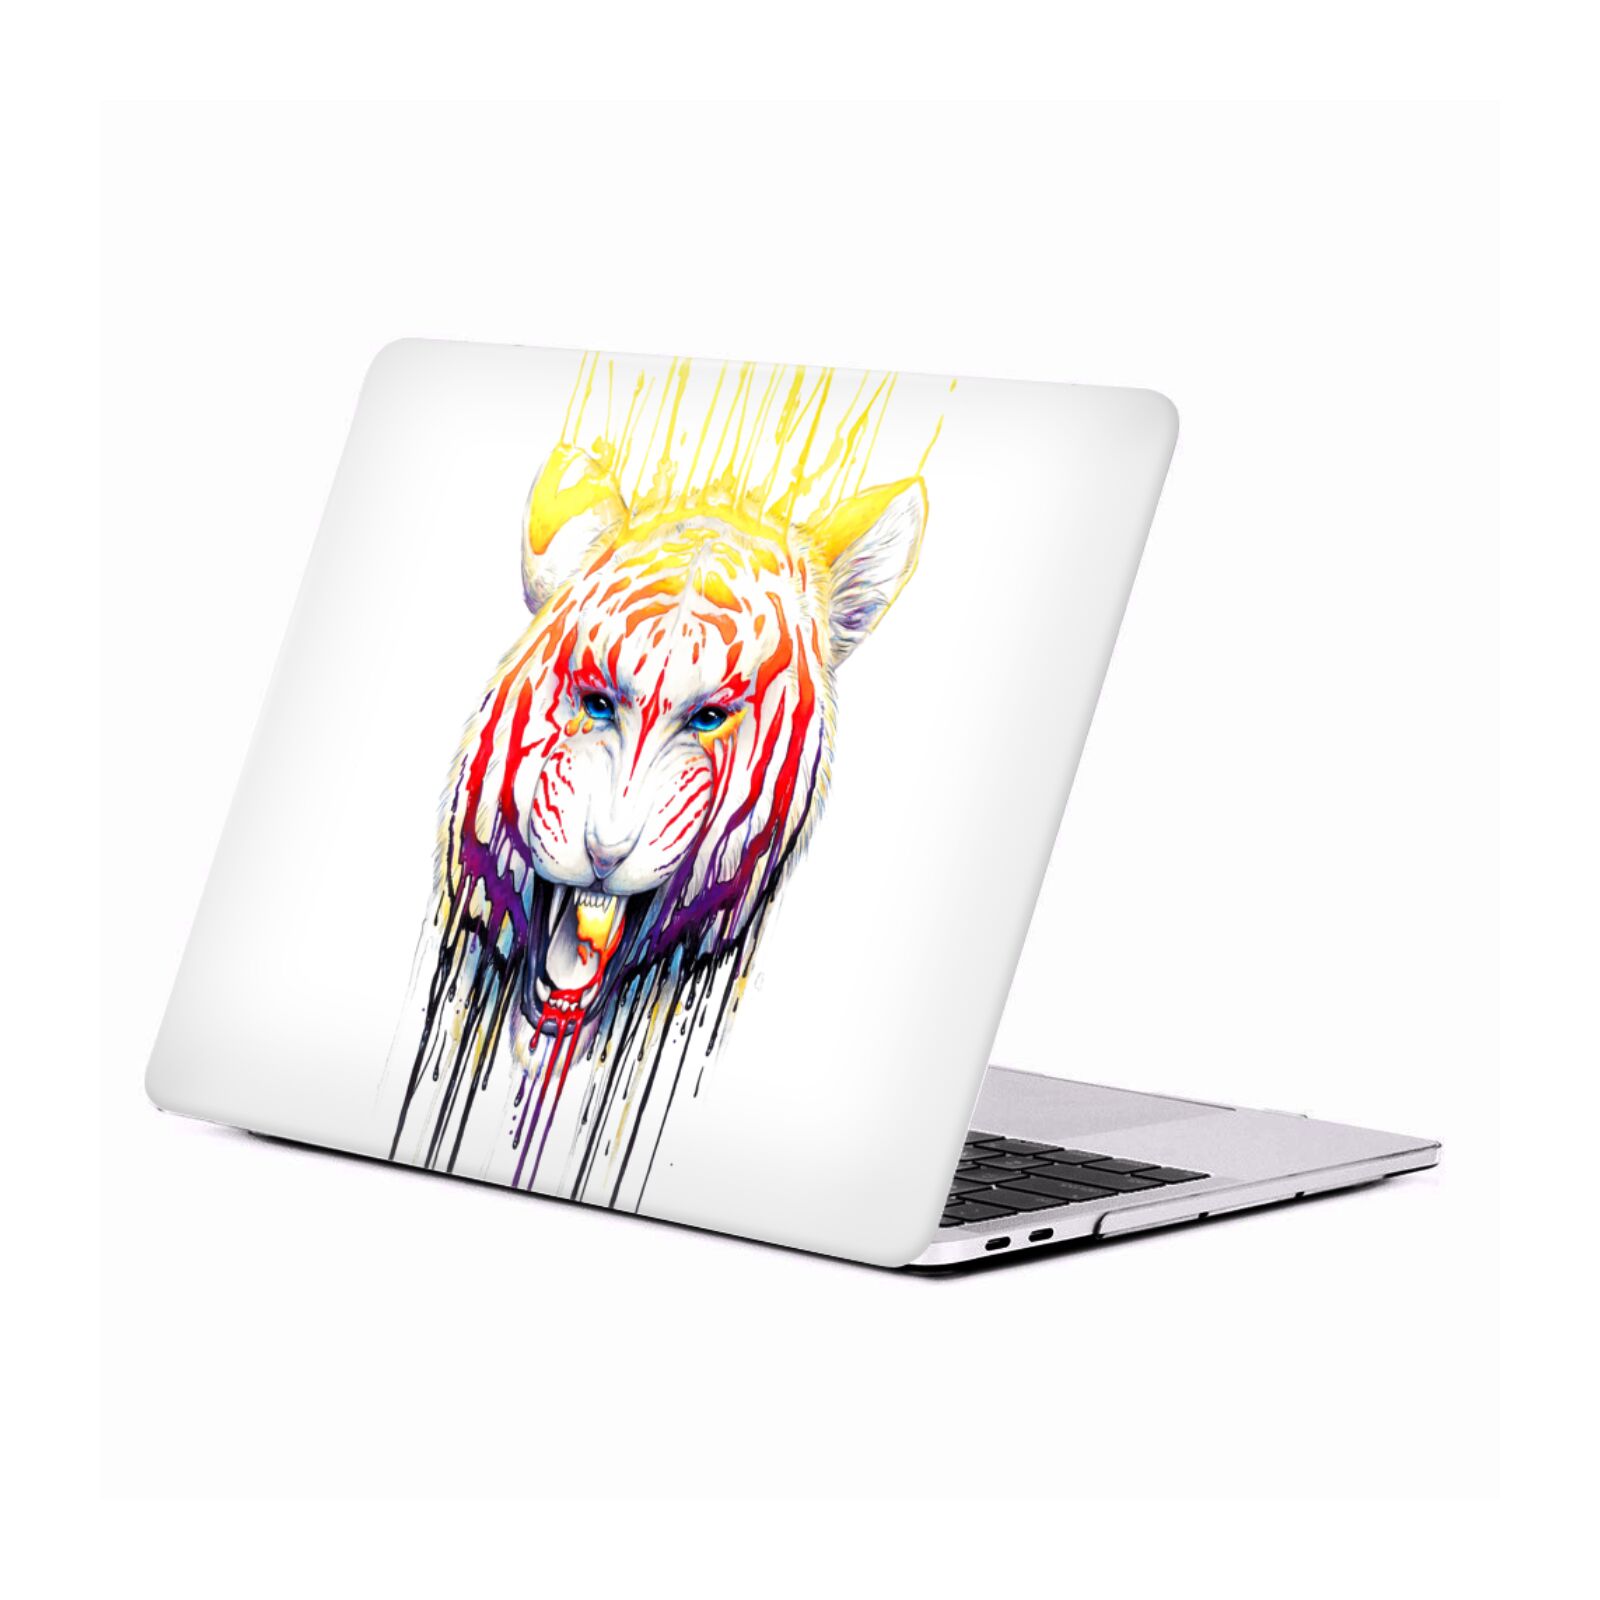 Official Jonas JoJoesArt Jödicke Owl Wildlife Hard Crystal Case Cover for MacBook Air 13 A1369 A1466 